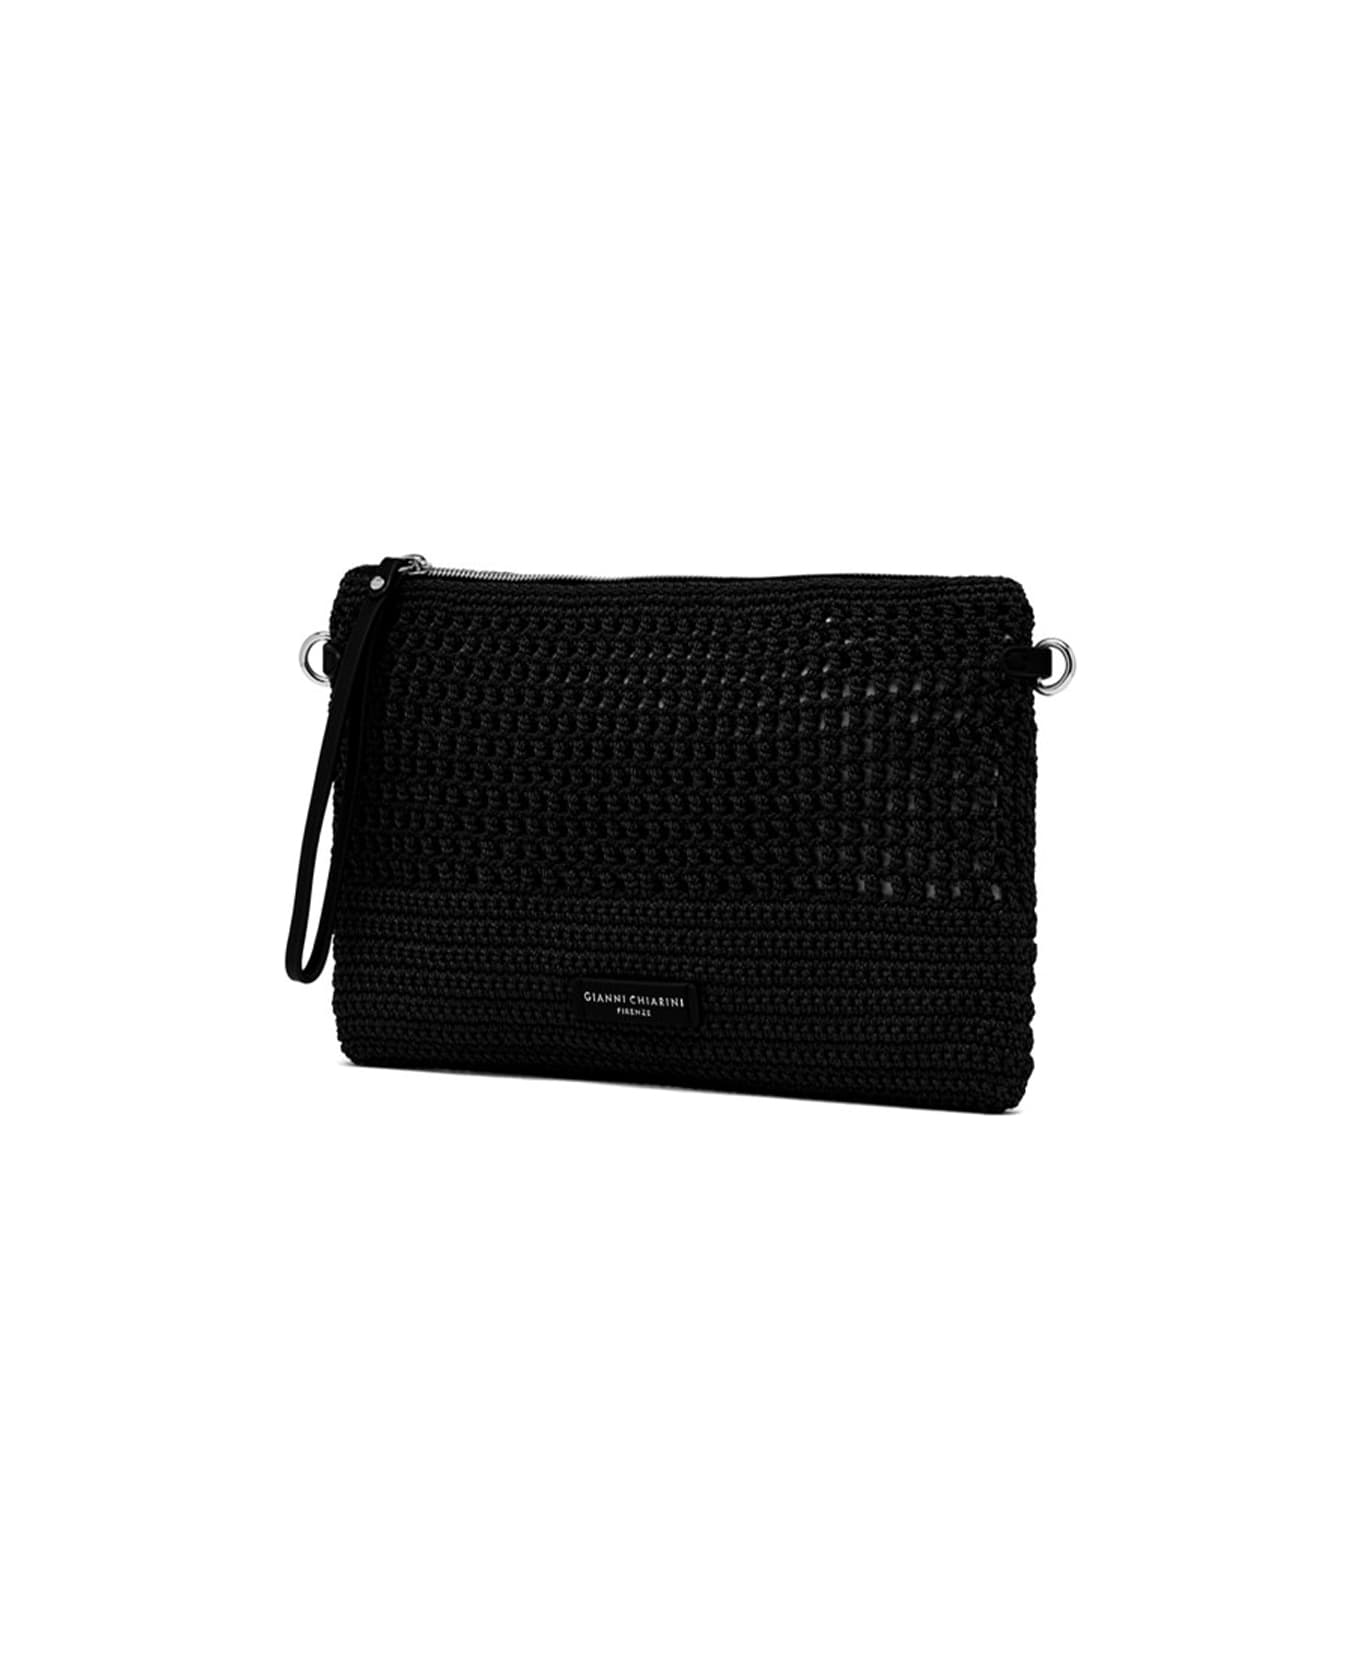 Gianni Chiarini Black Victoria Clutch Bag In Crochet Fabric - NERO